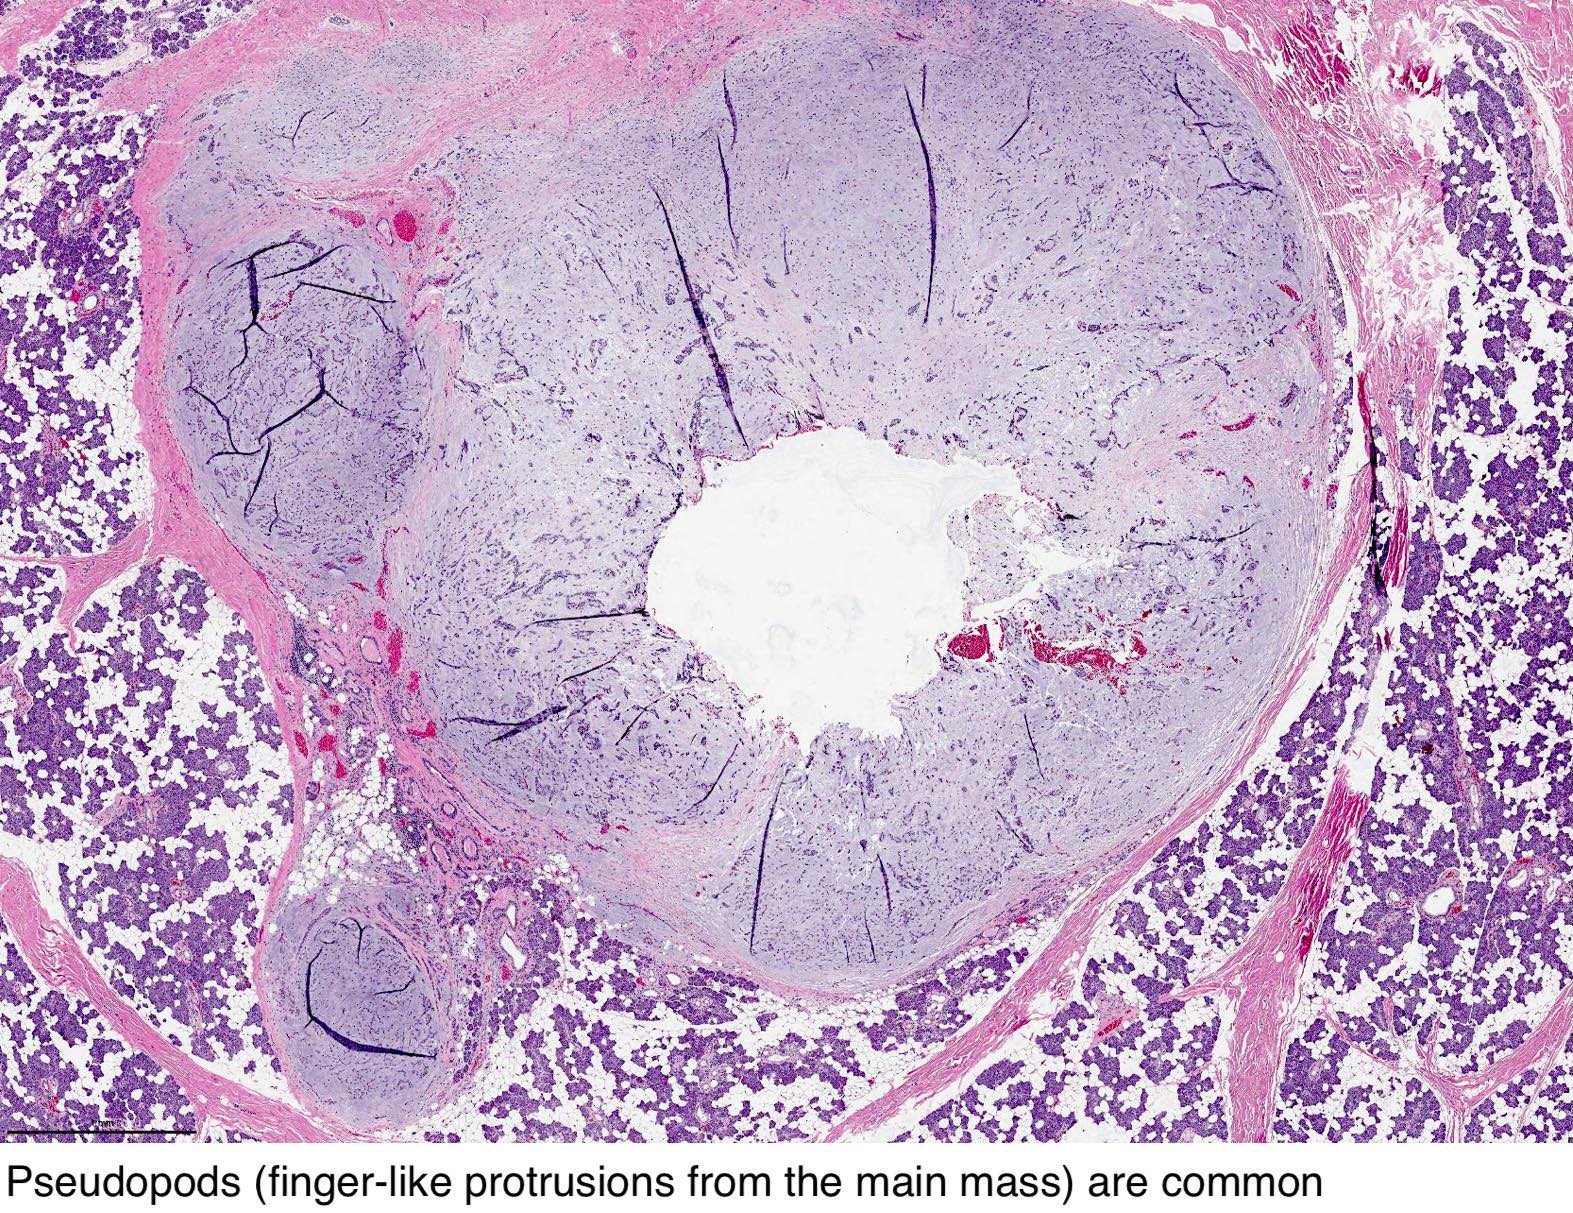 Pleomorf adenoma pathology